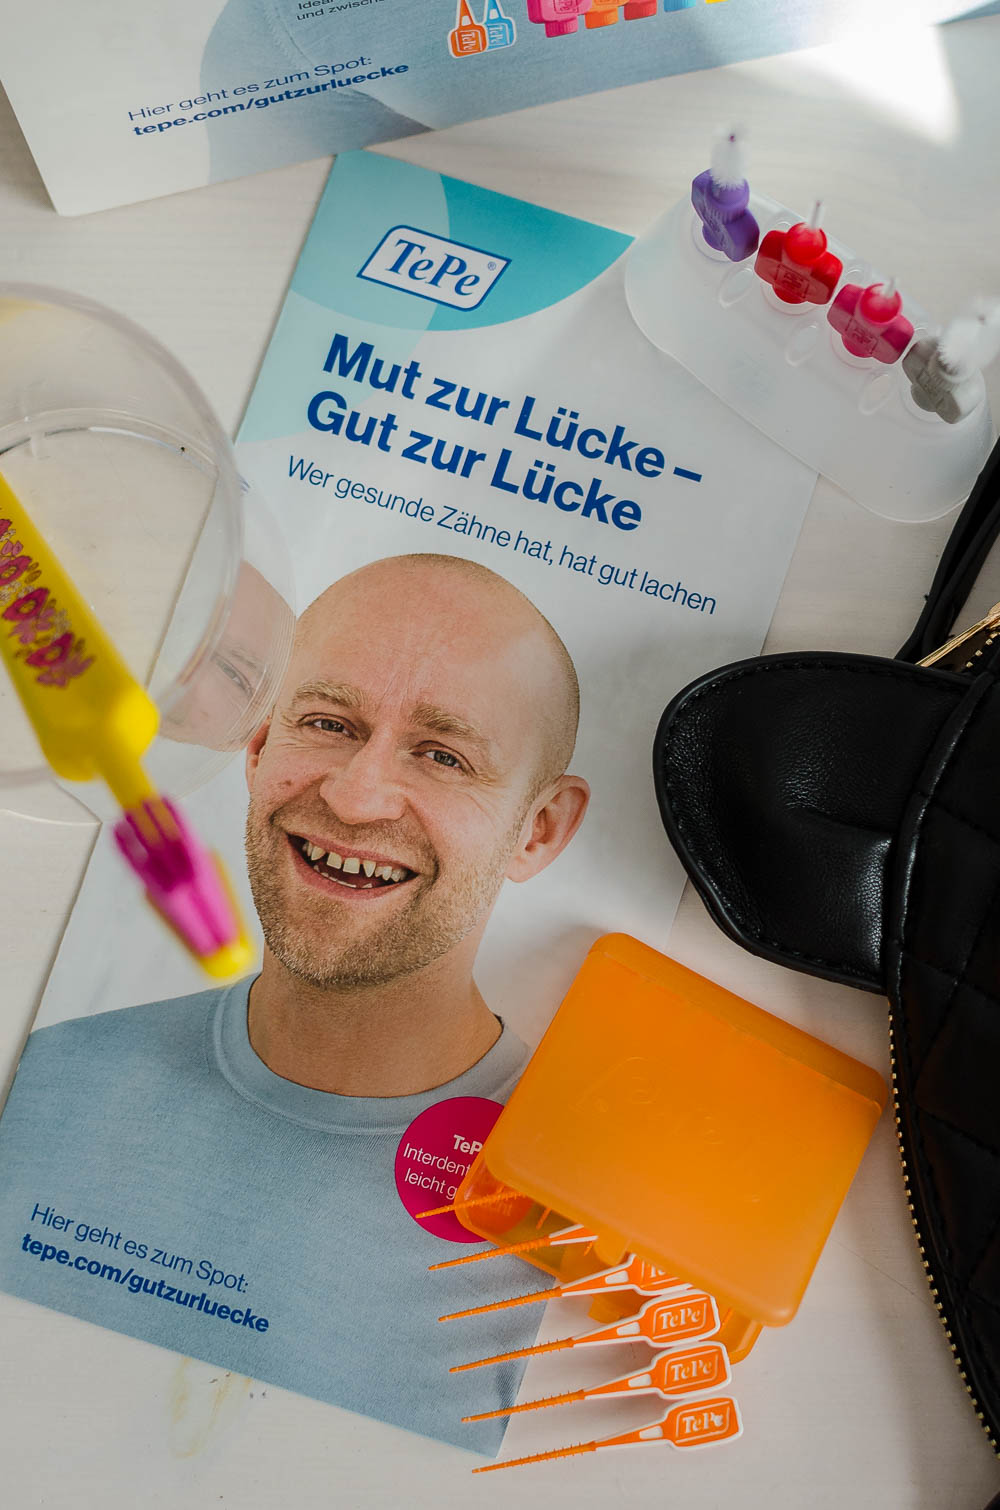 andysparkles-Tipps für Zahnpflege-TePe-Gut zur Lücke-Mut zur Lücke